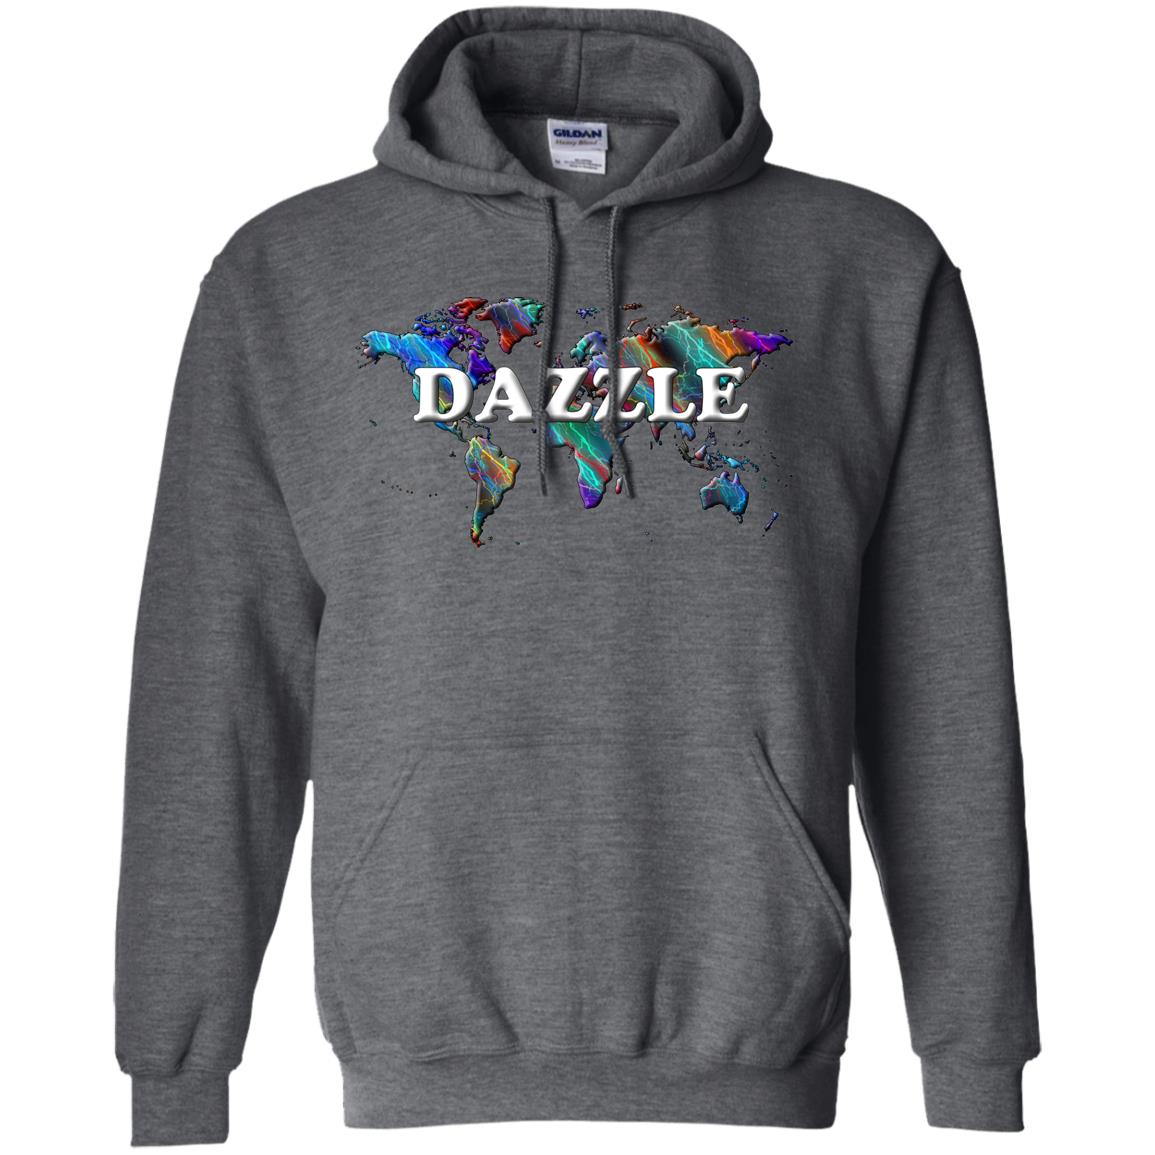 Dazzle Statement Hoodie